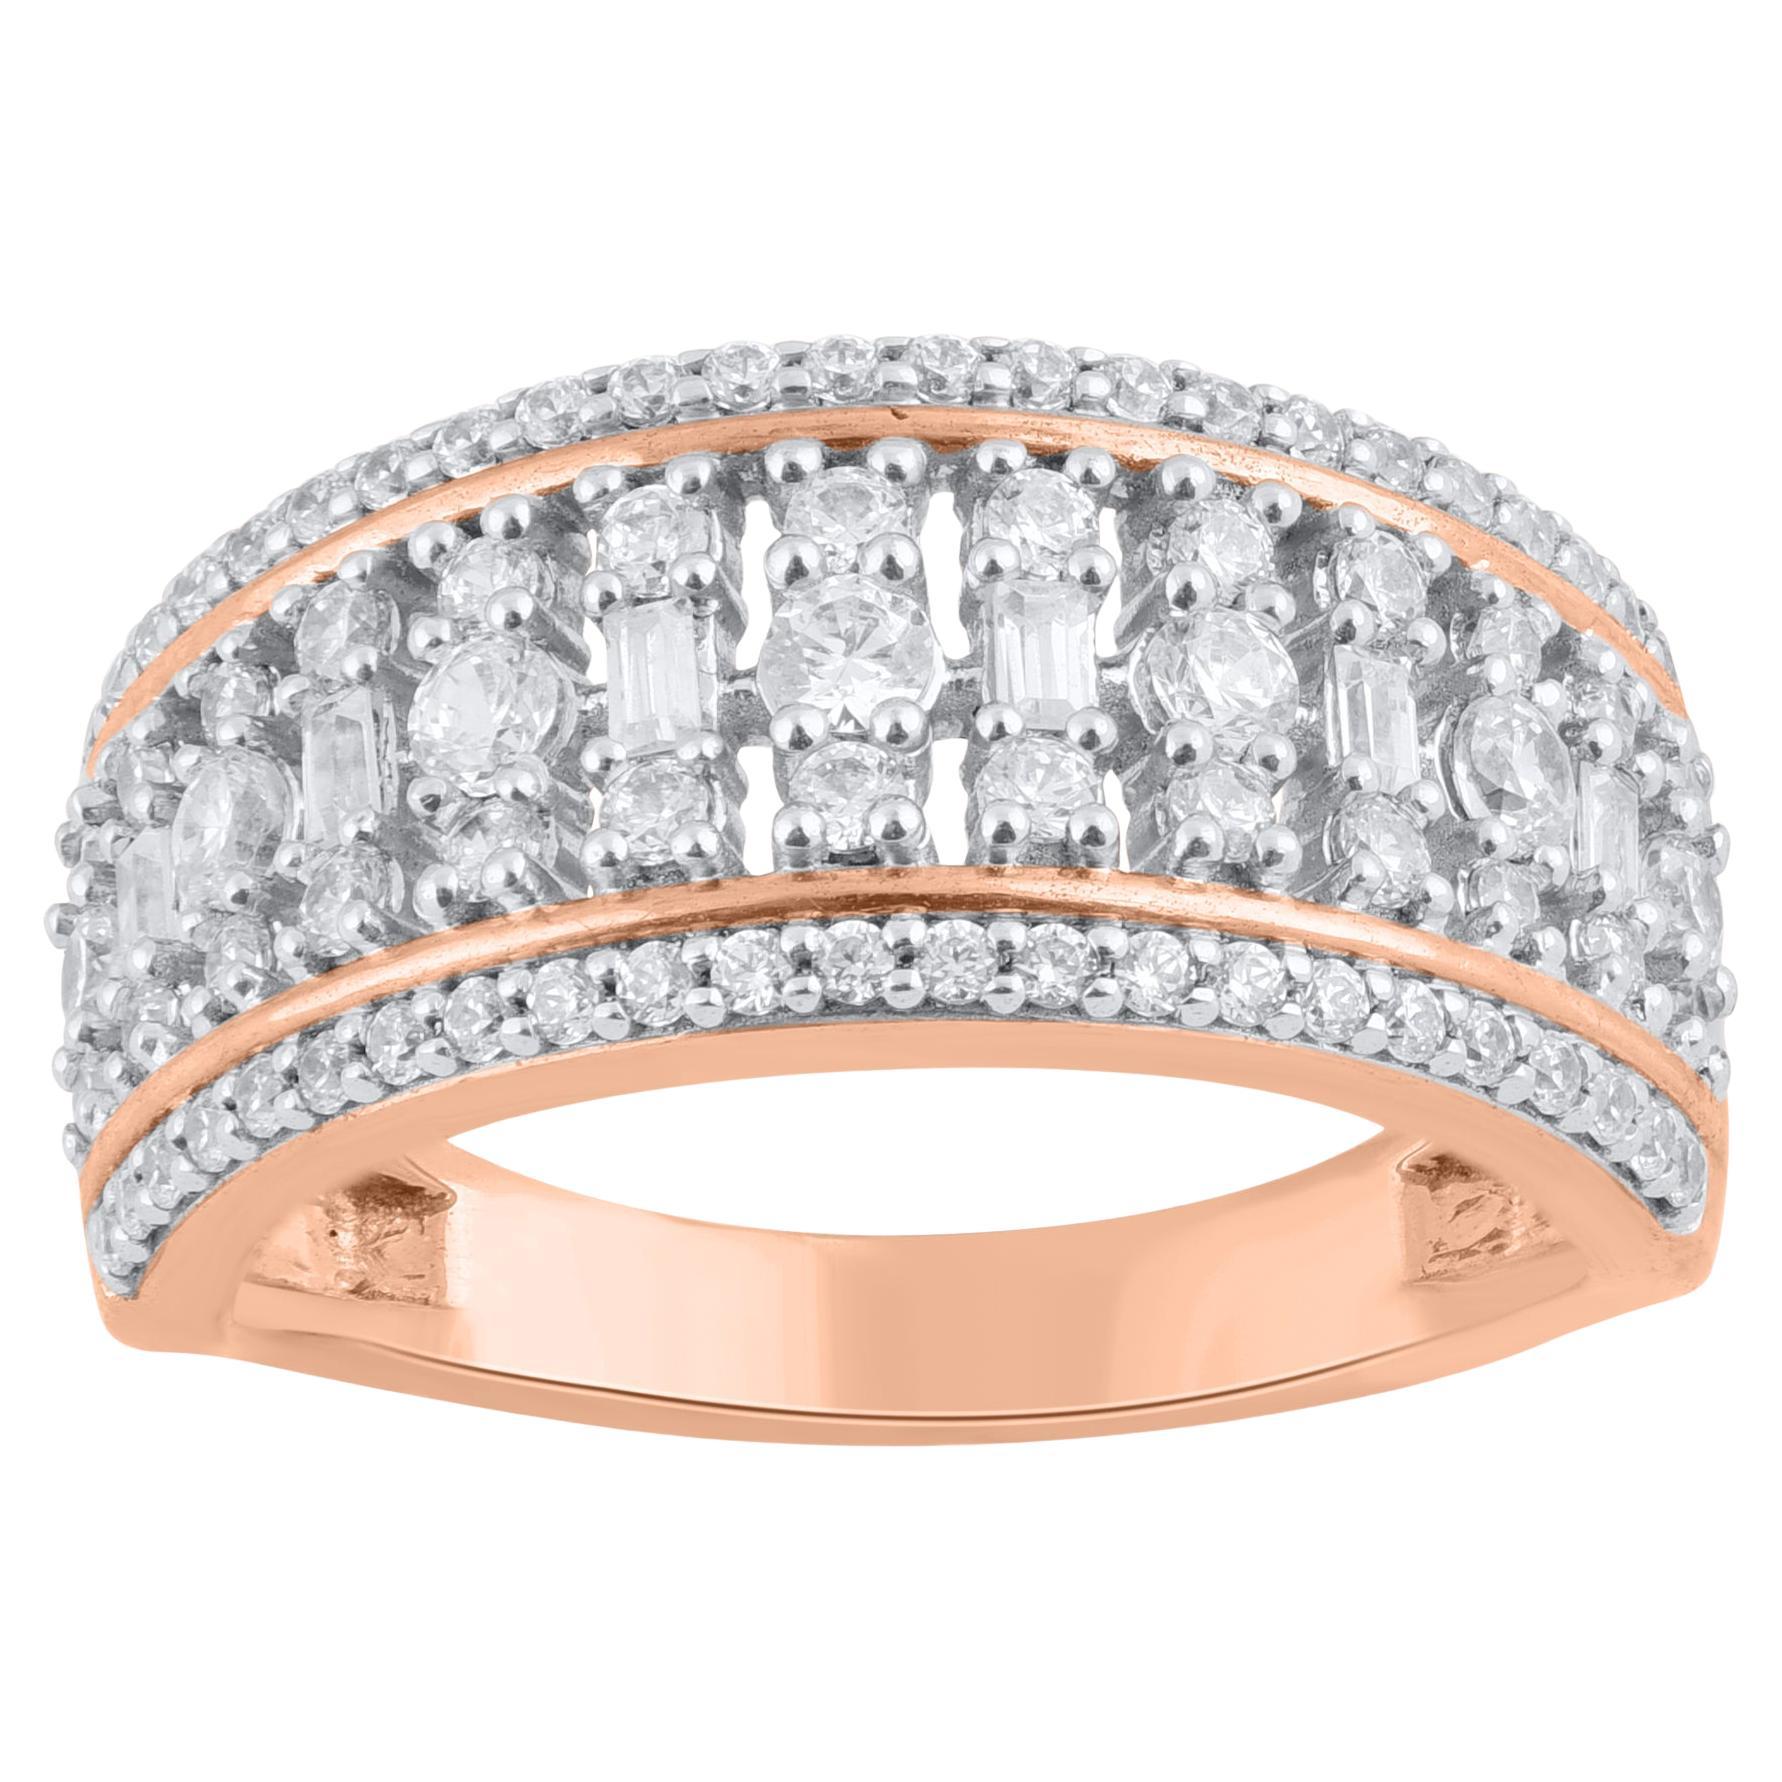 TJD 1.0 Carat Round & Baguette Natural Diamond 18KT Rose Gold Wedding Band Ring (anneau de mariage en or rose 18KT)